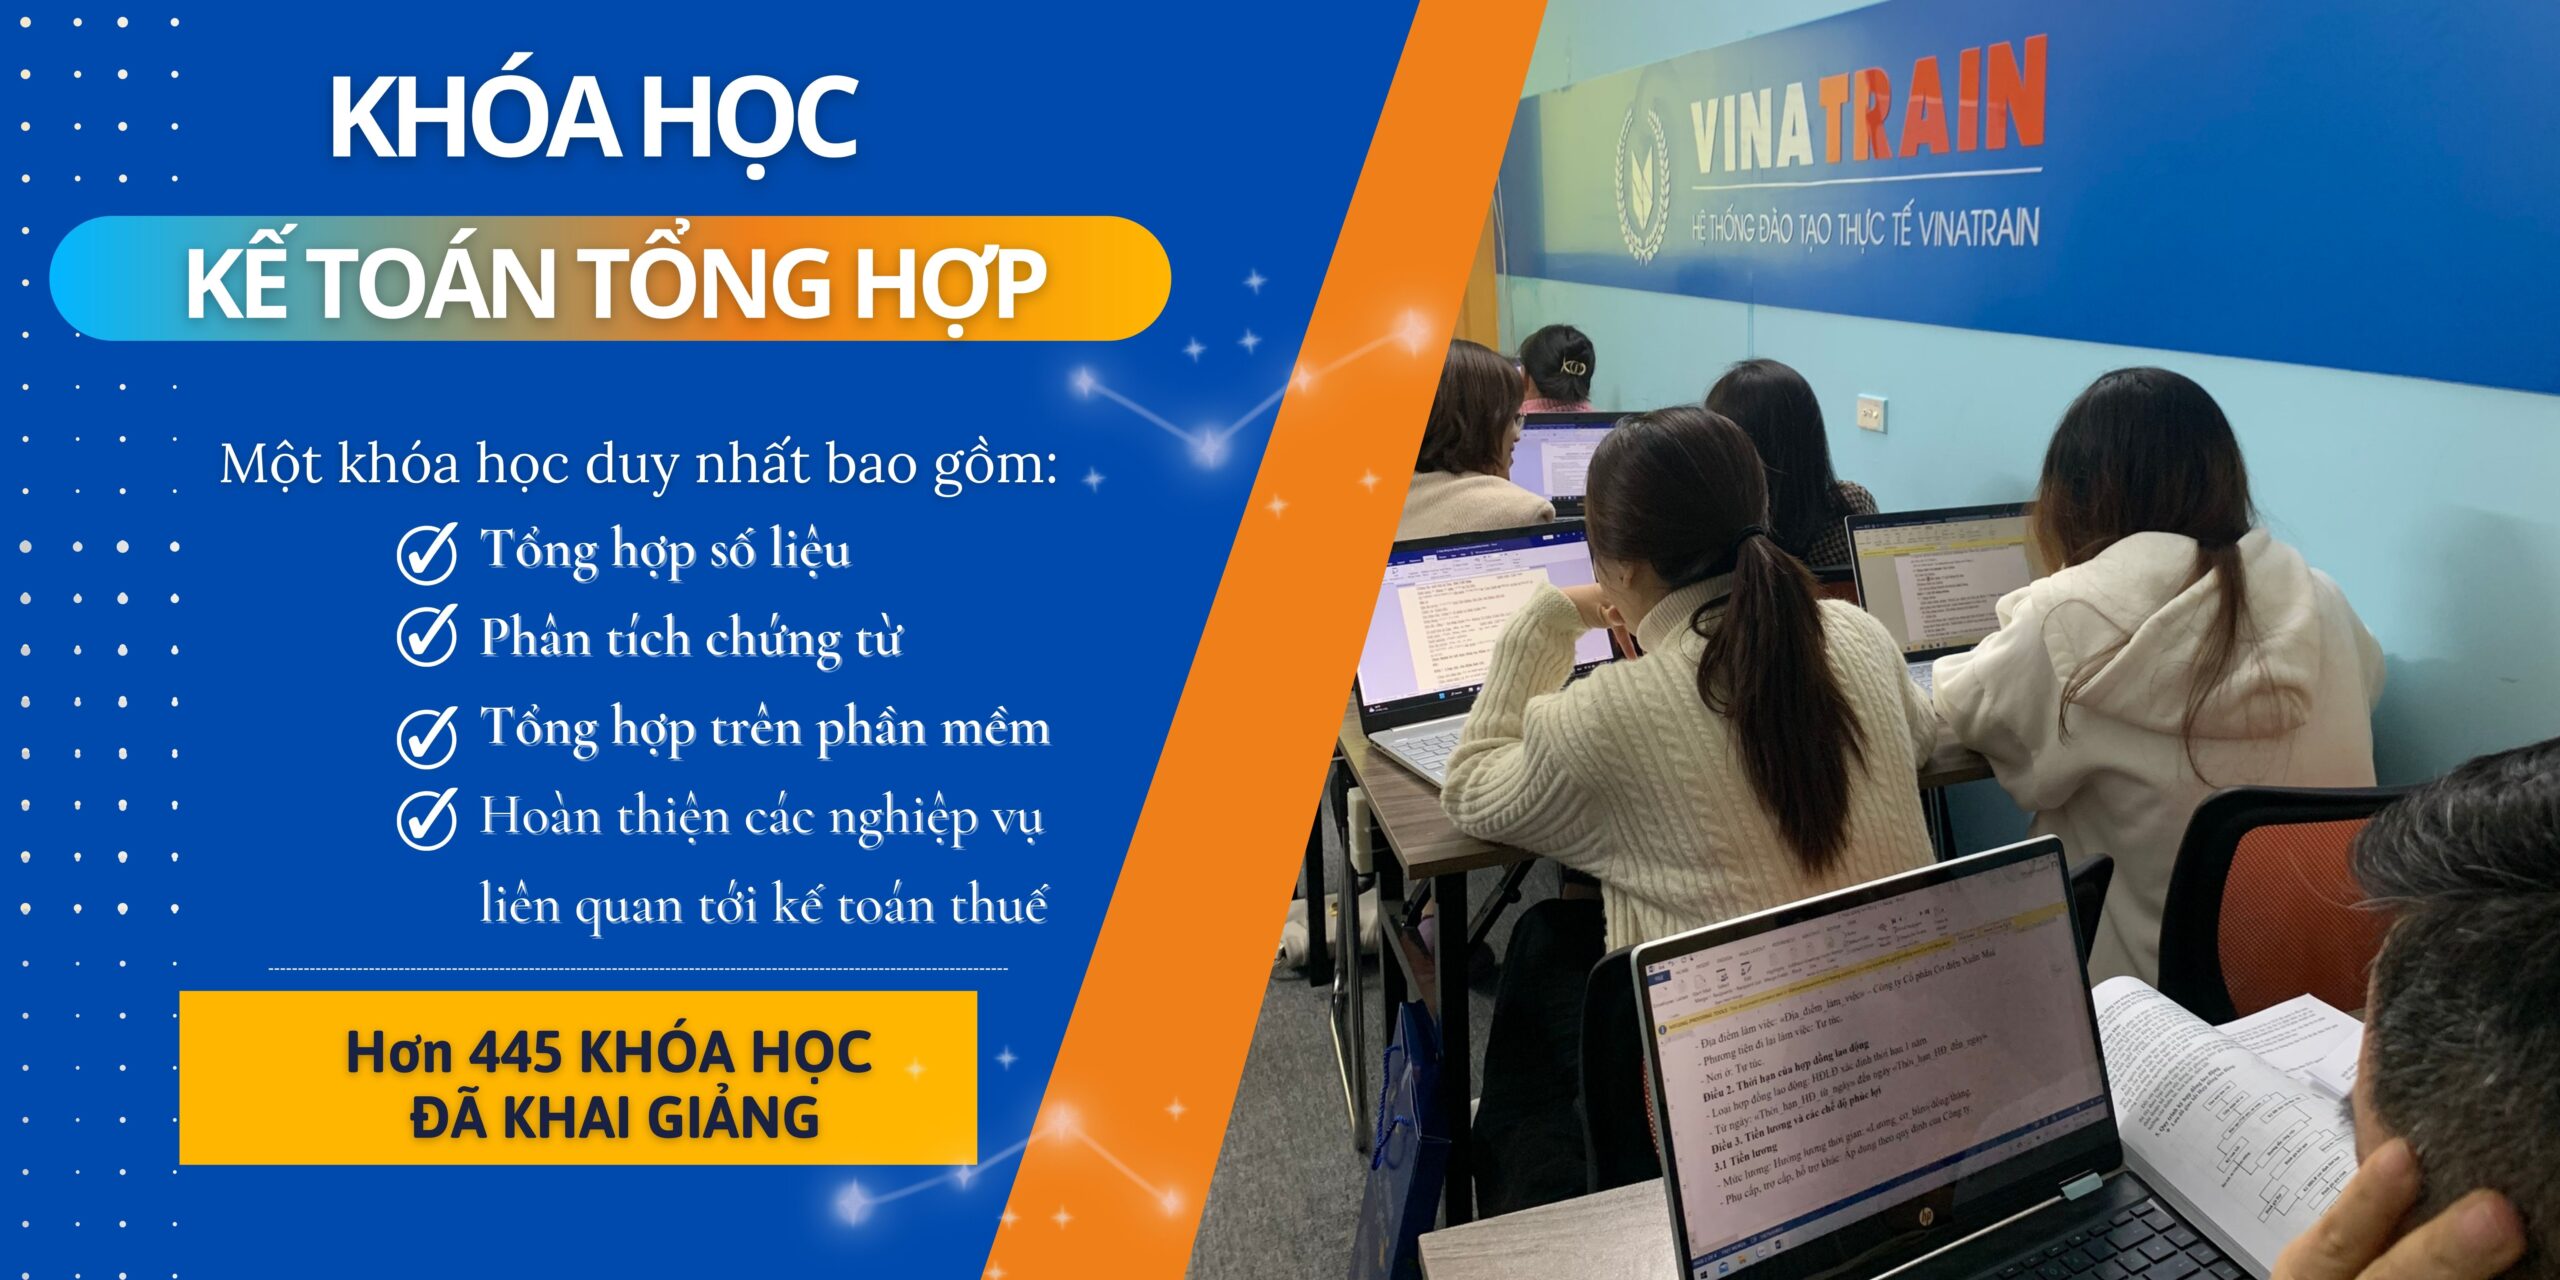 Trung tâm kế toán VinaTrain - nơi học kế toán tổng hợp uy tín tại Hà Nội